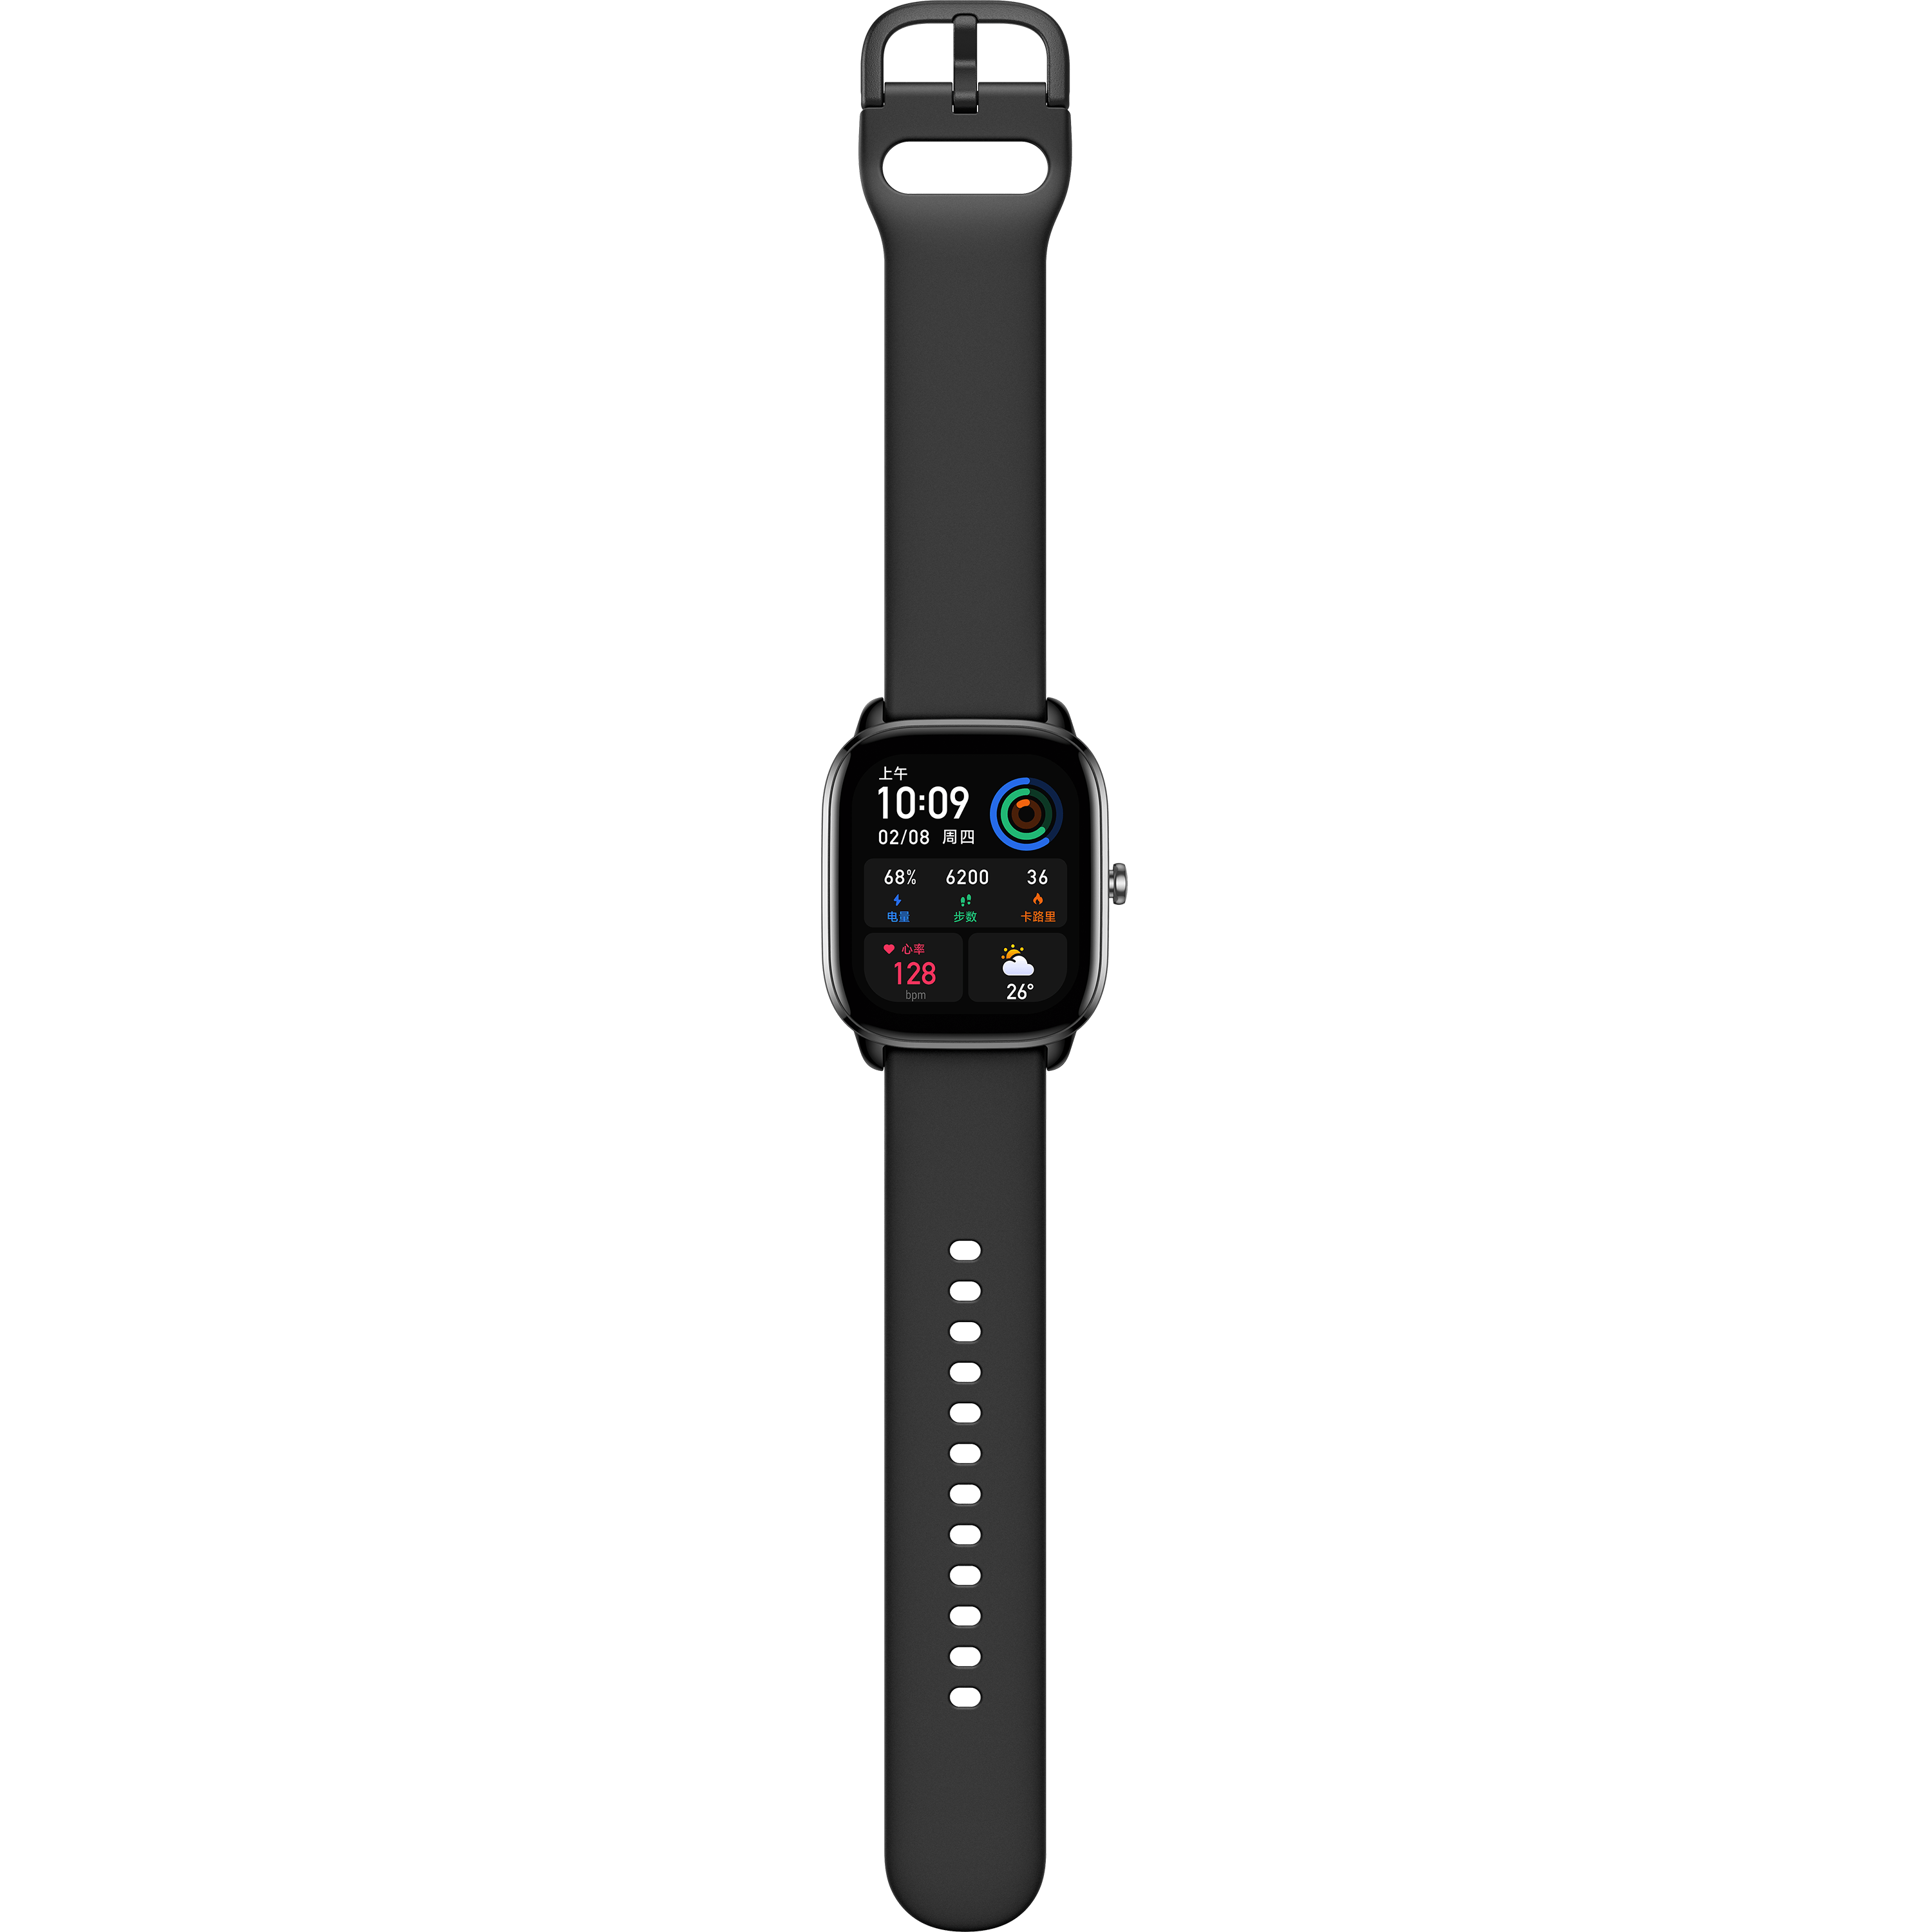 שעון חכם Amazfit GTS 4 Mini - צבע שחור חצות שנה אחריות ע